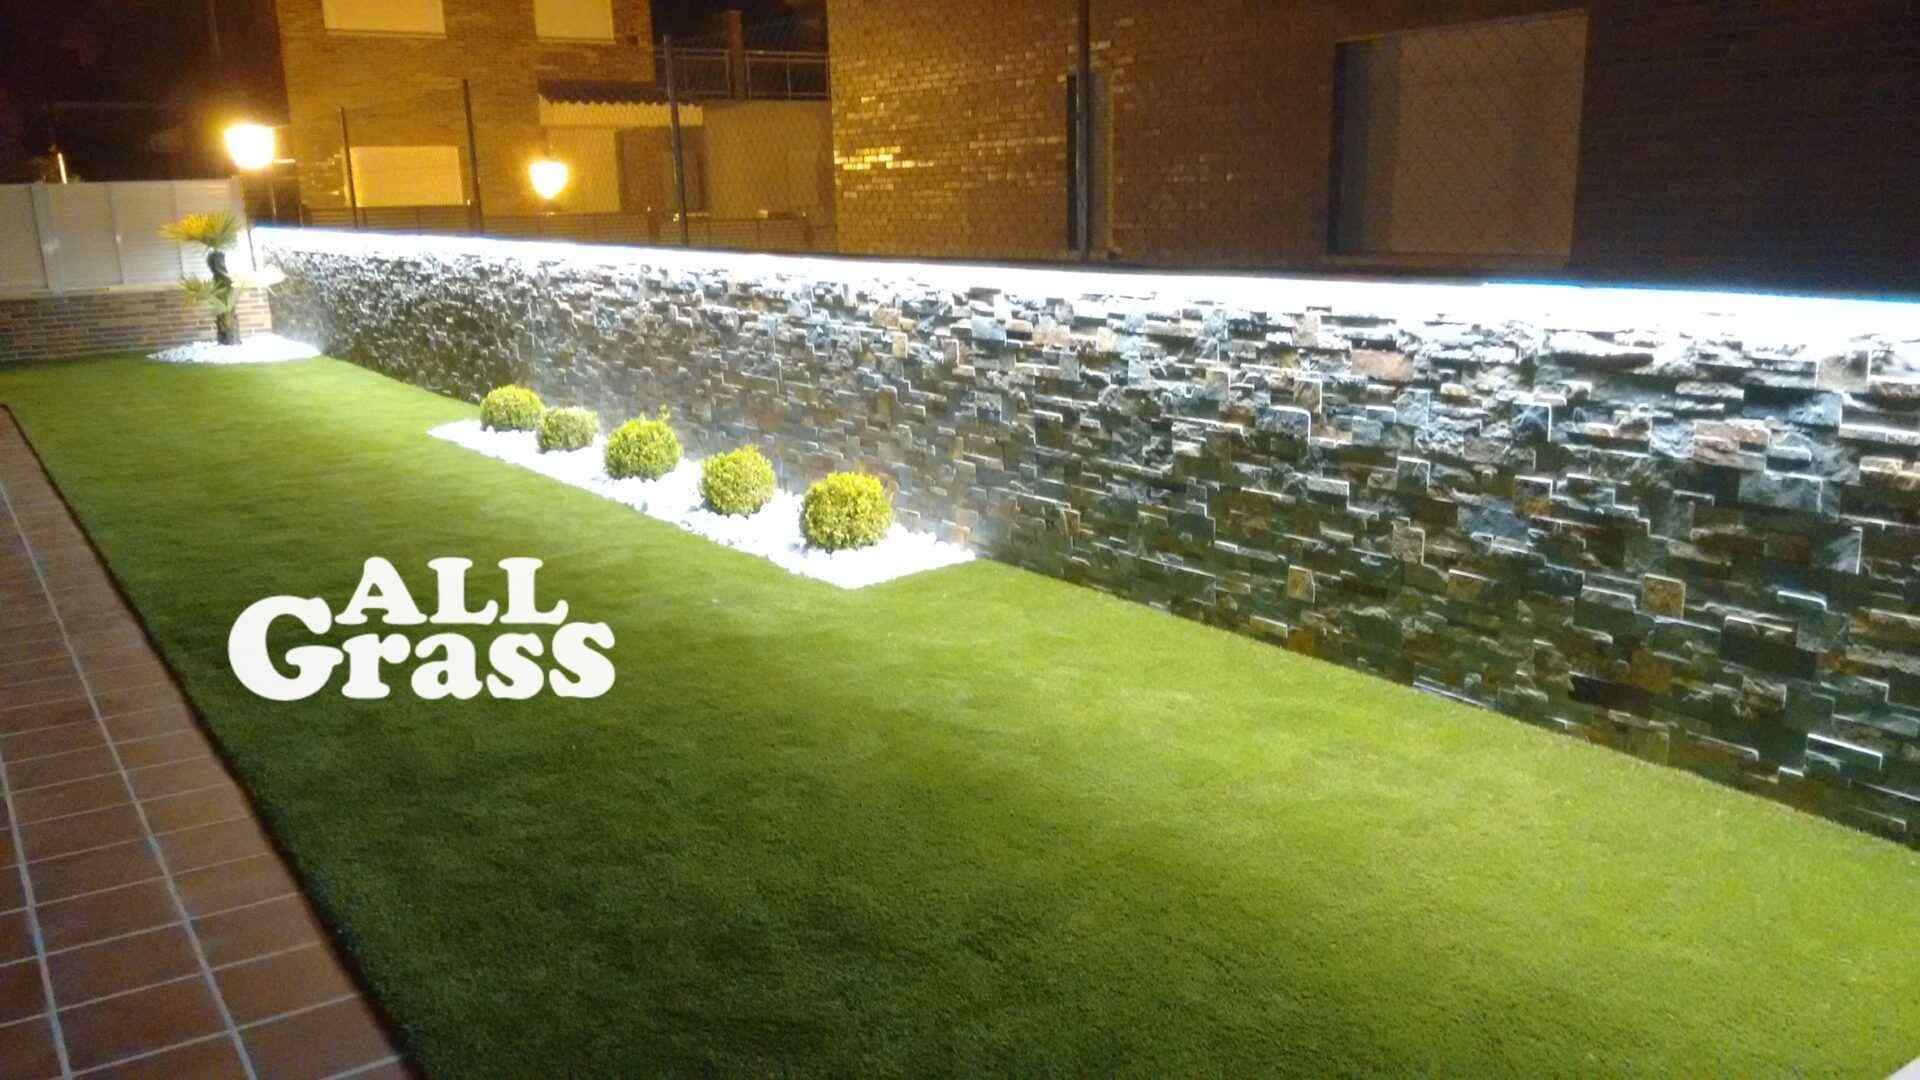 Cómo combinar el césped artificial en tu terraza o jardín